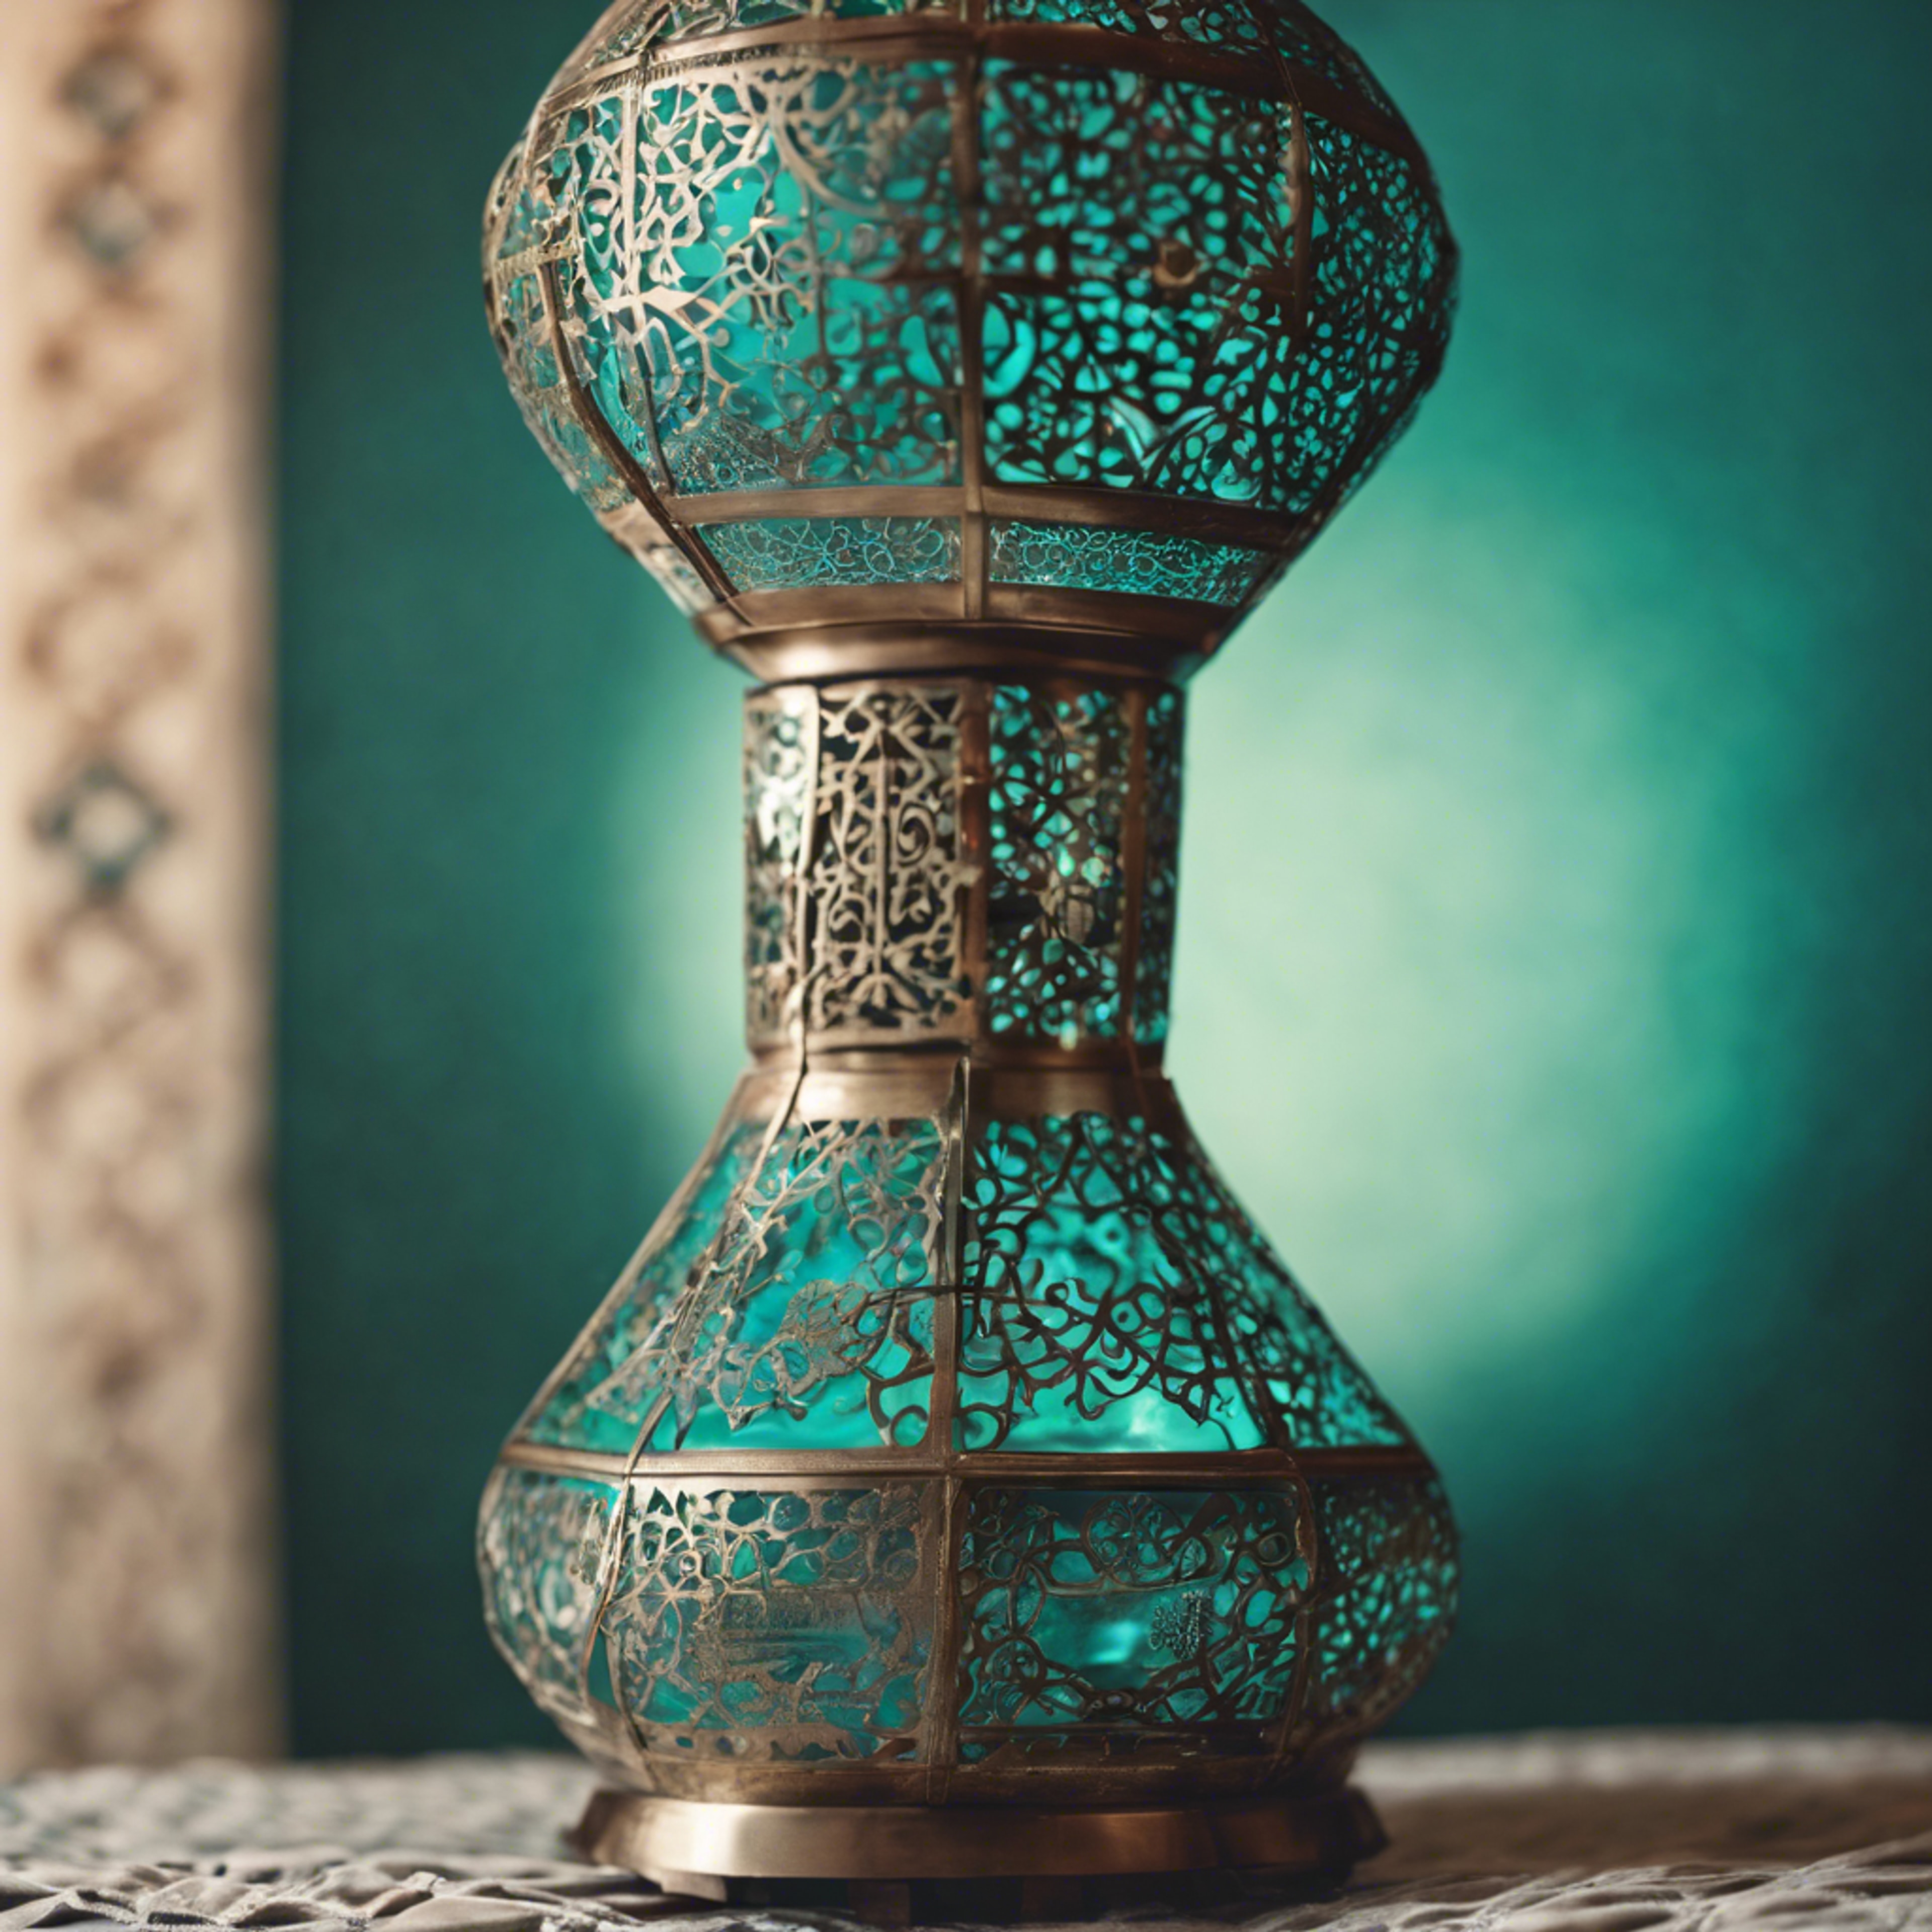 A traditional Moroccan lamp in a cool teal color. duvar kağıdı[a27f0371dbce4744aca5]